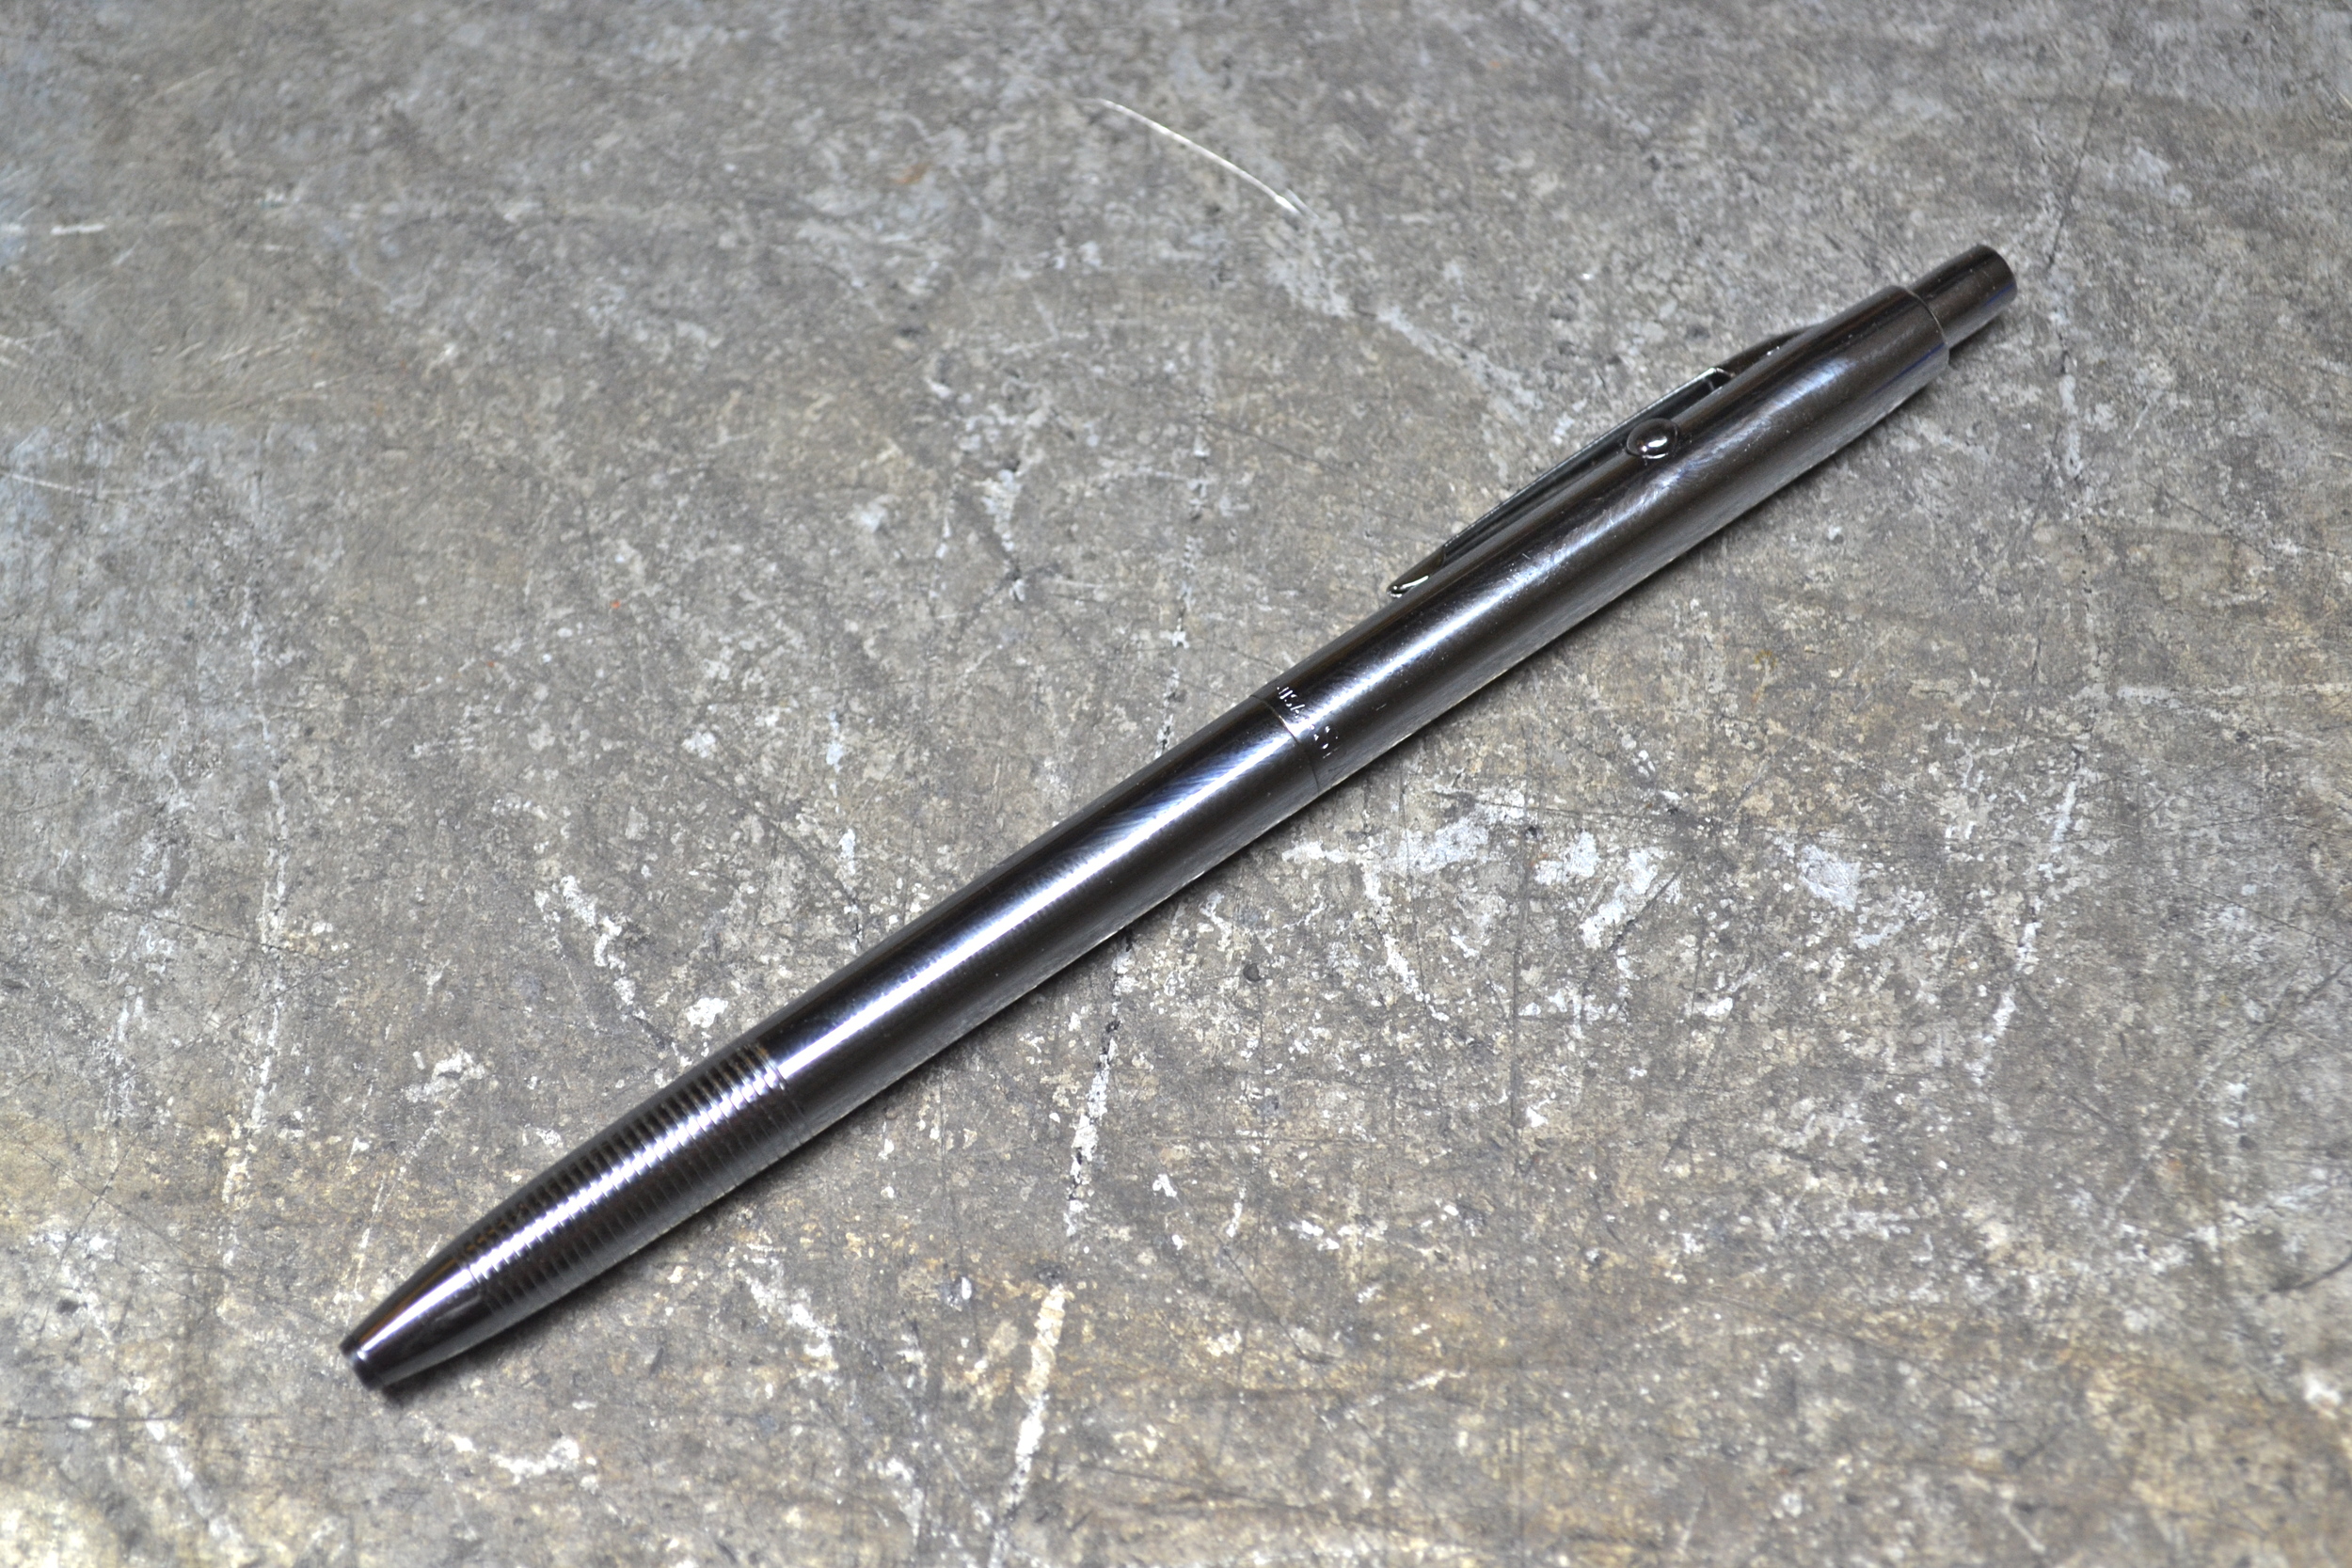 Fisher Bullet Shuttle Pen - Chrome